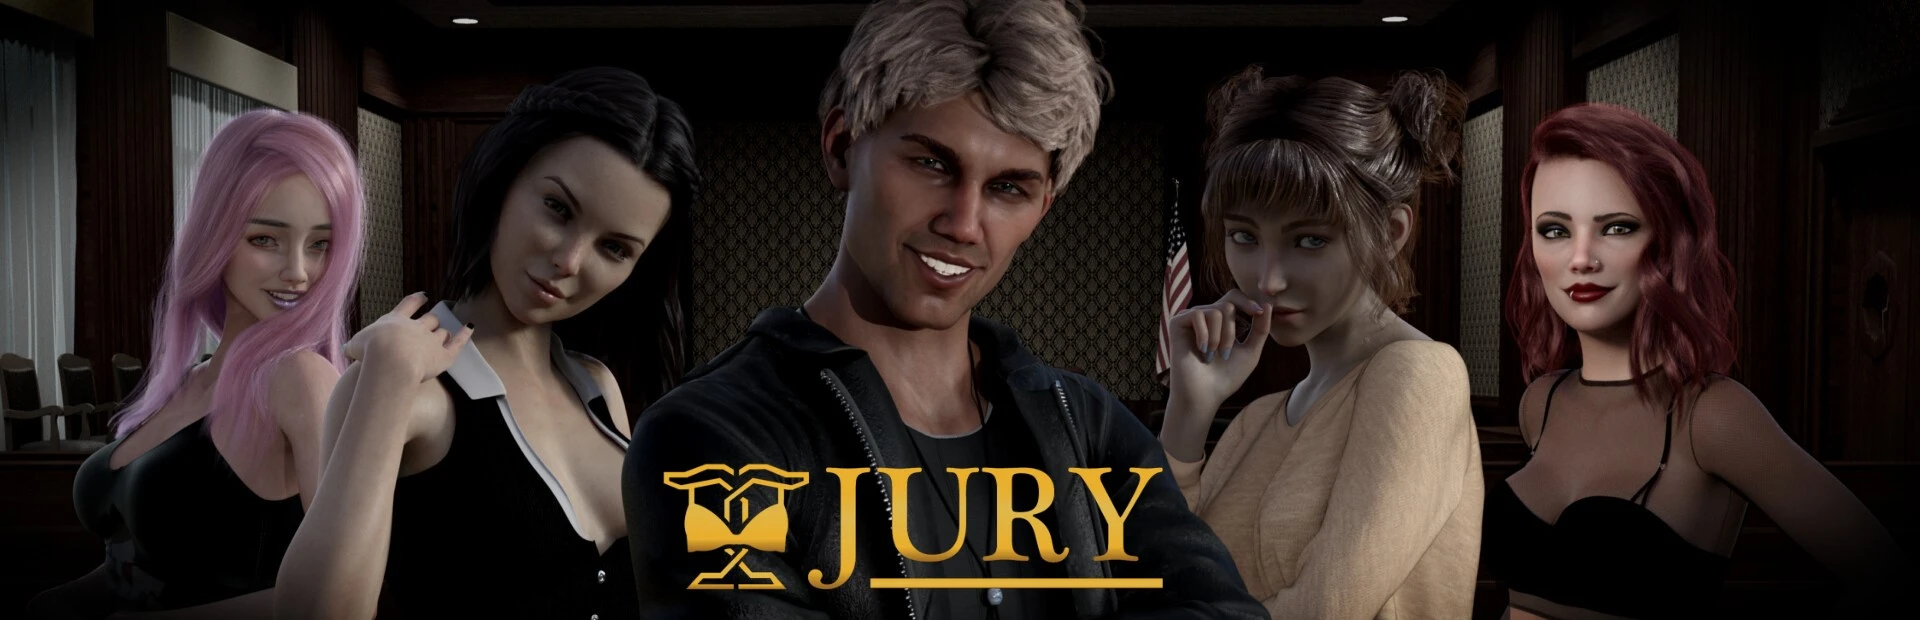 Jury main image